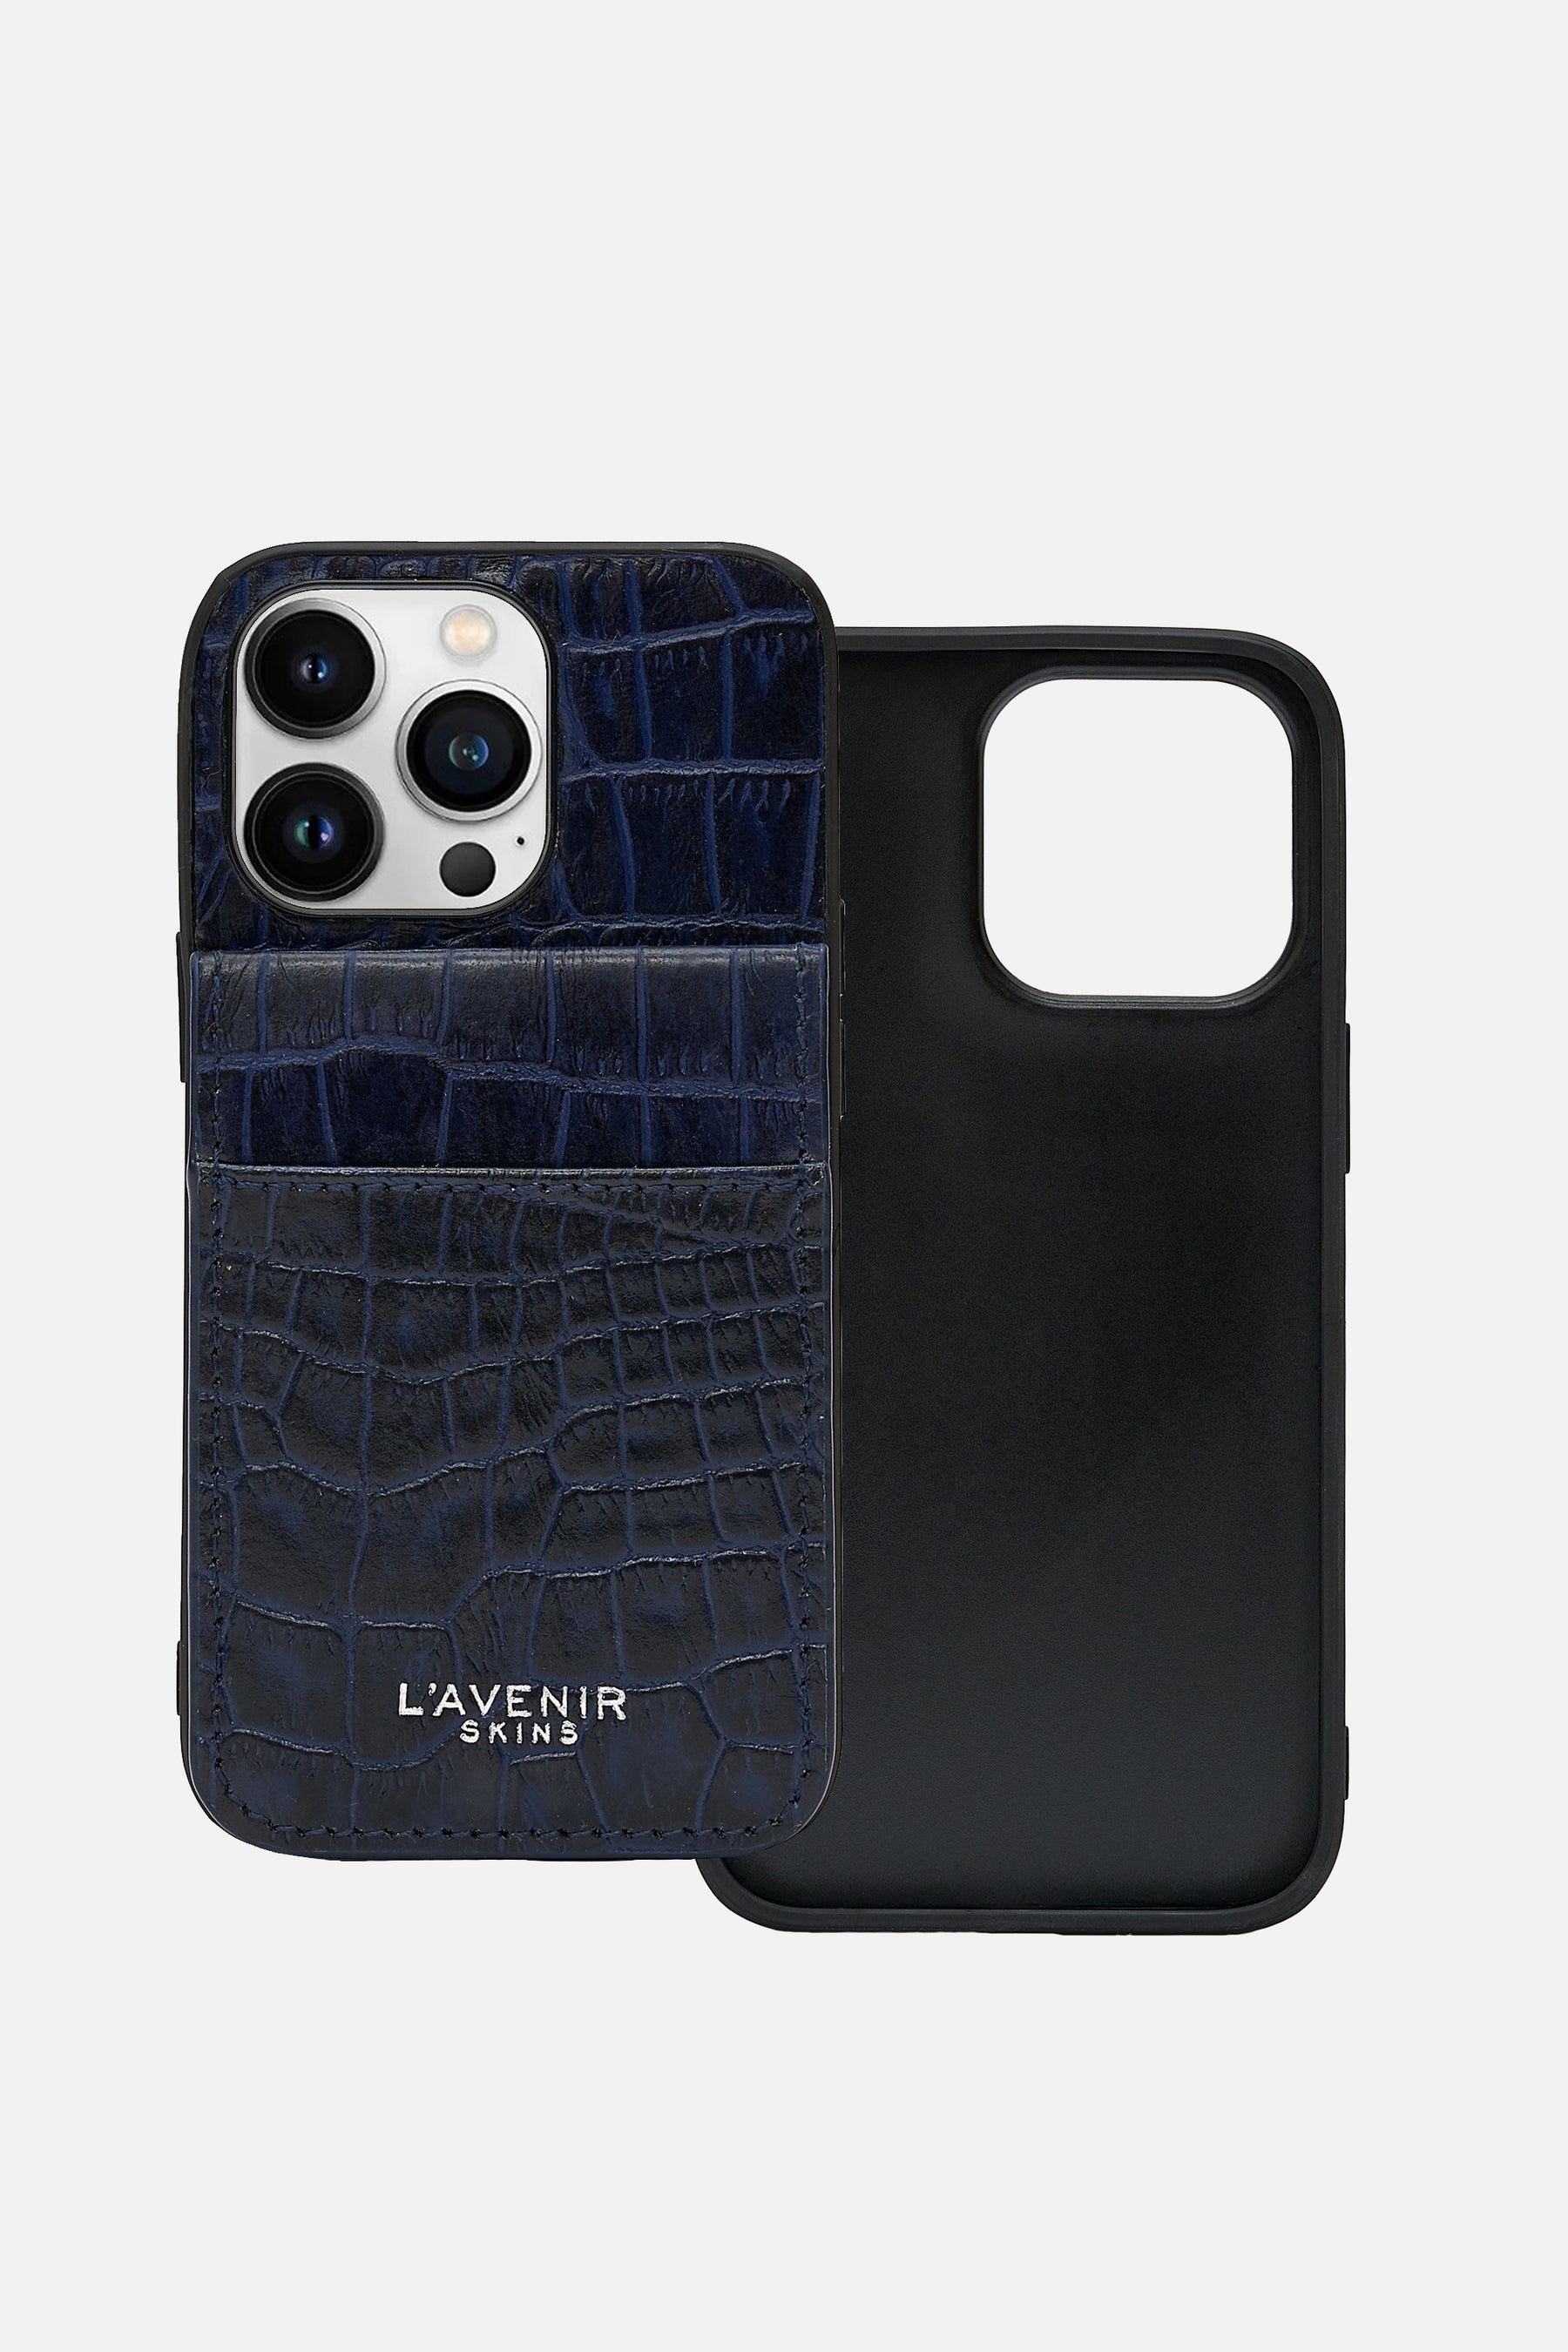 Iphone  Wallet Case - Croco Ocean Caven Blue